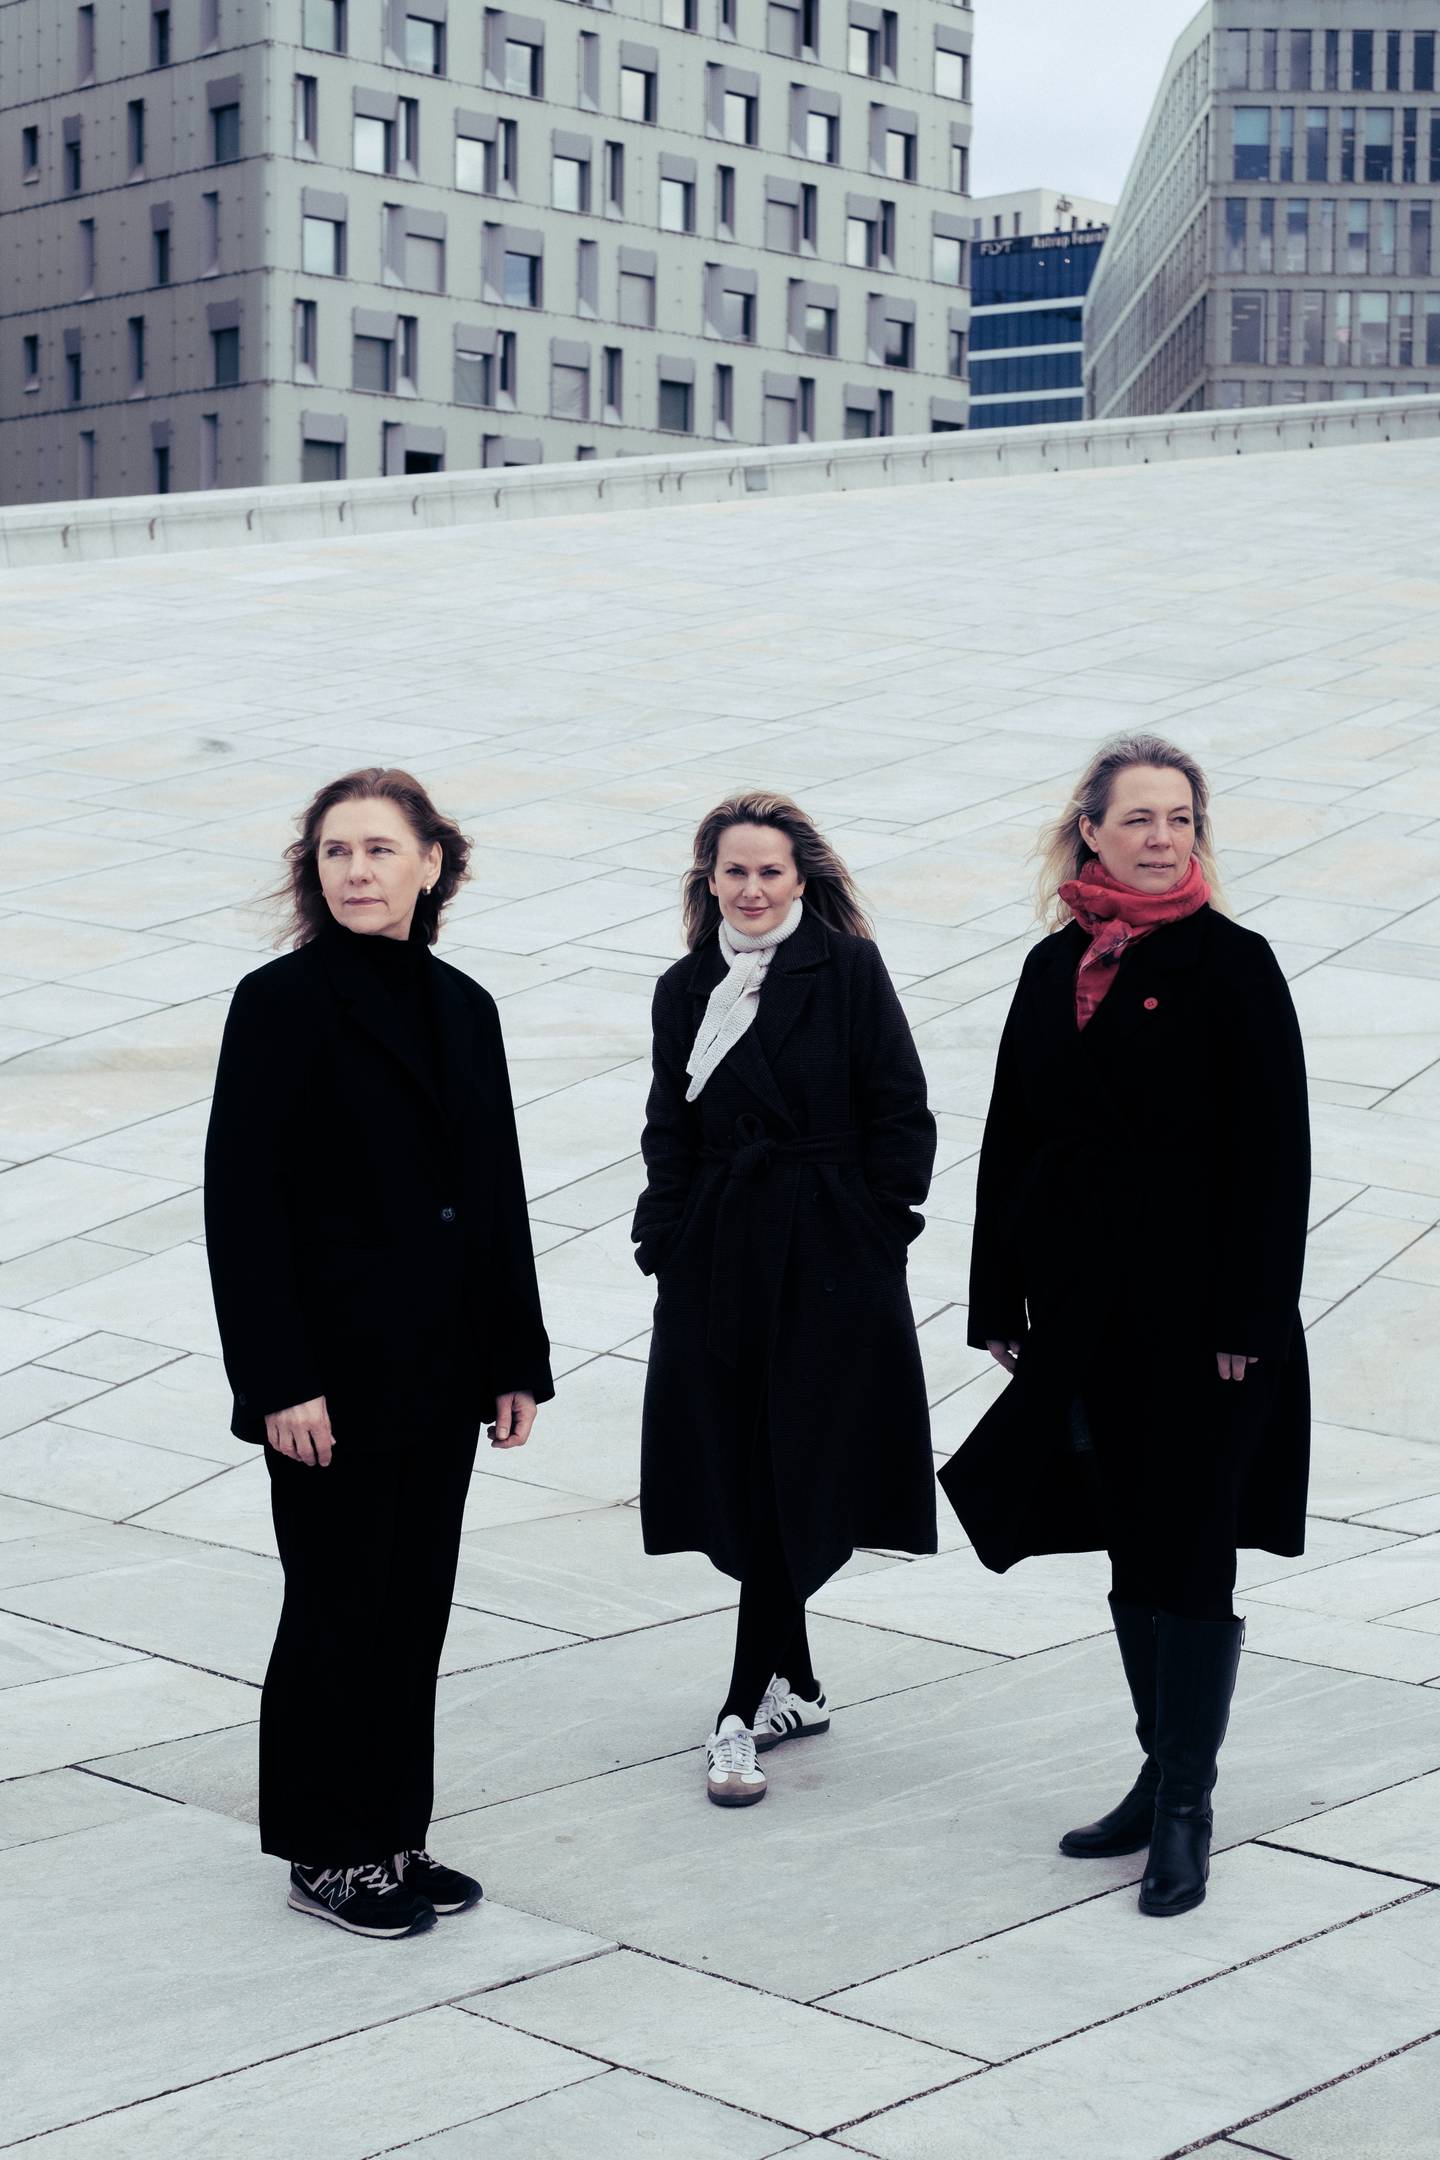 Gruppebilde. Fra venstre til høyre: Gudrun Glette, Mari Eriksmoen, og Maria Sammut. Tatt i forbindelse med oppsetningen av Karmelittsøstrene på Den Norske Opera.